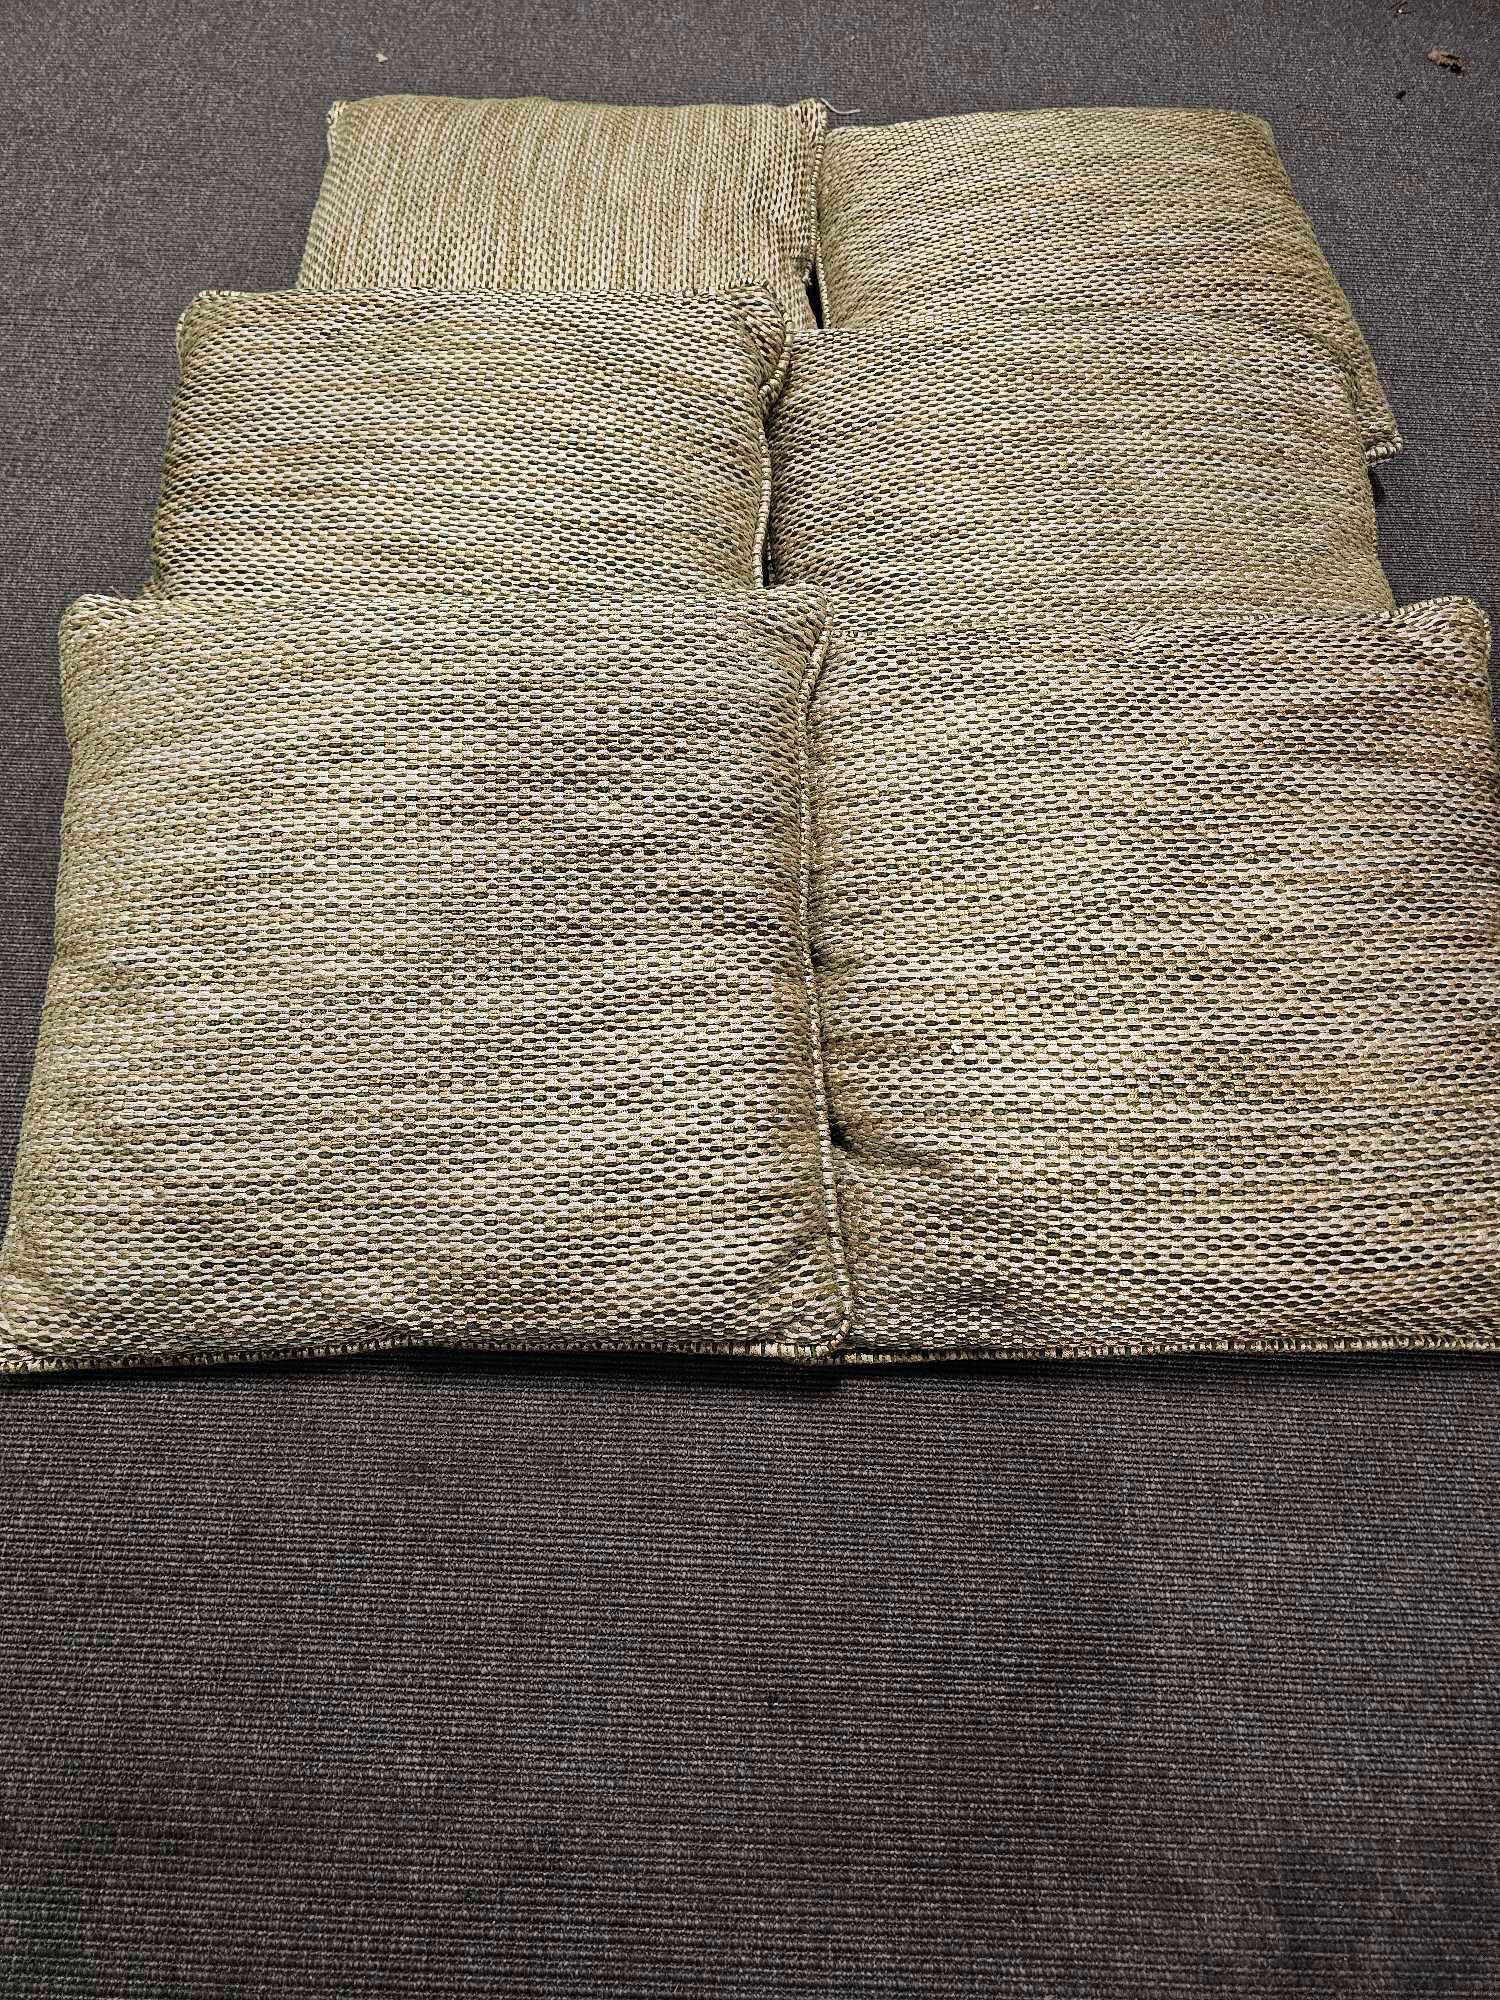 6 x Gold / Black Silk Cushions Size 45 x 45cm ( Ref 144)